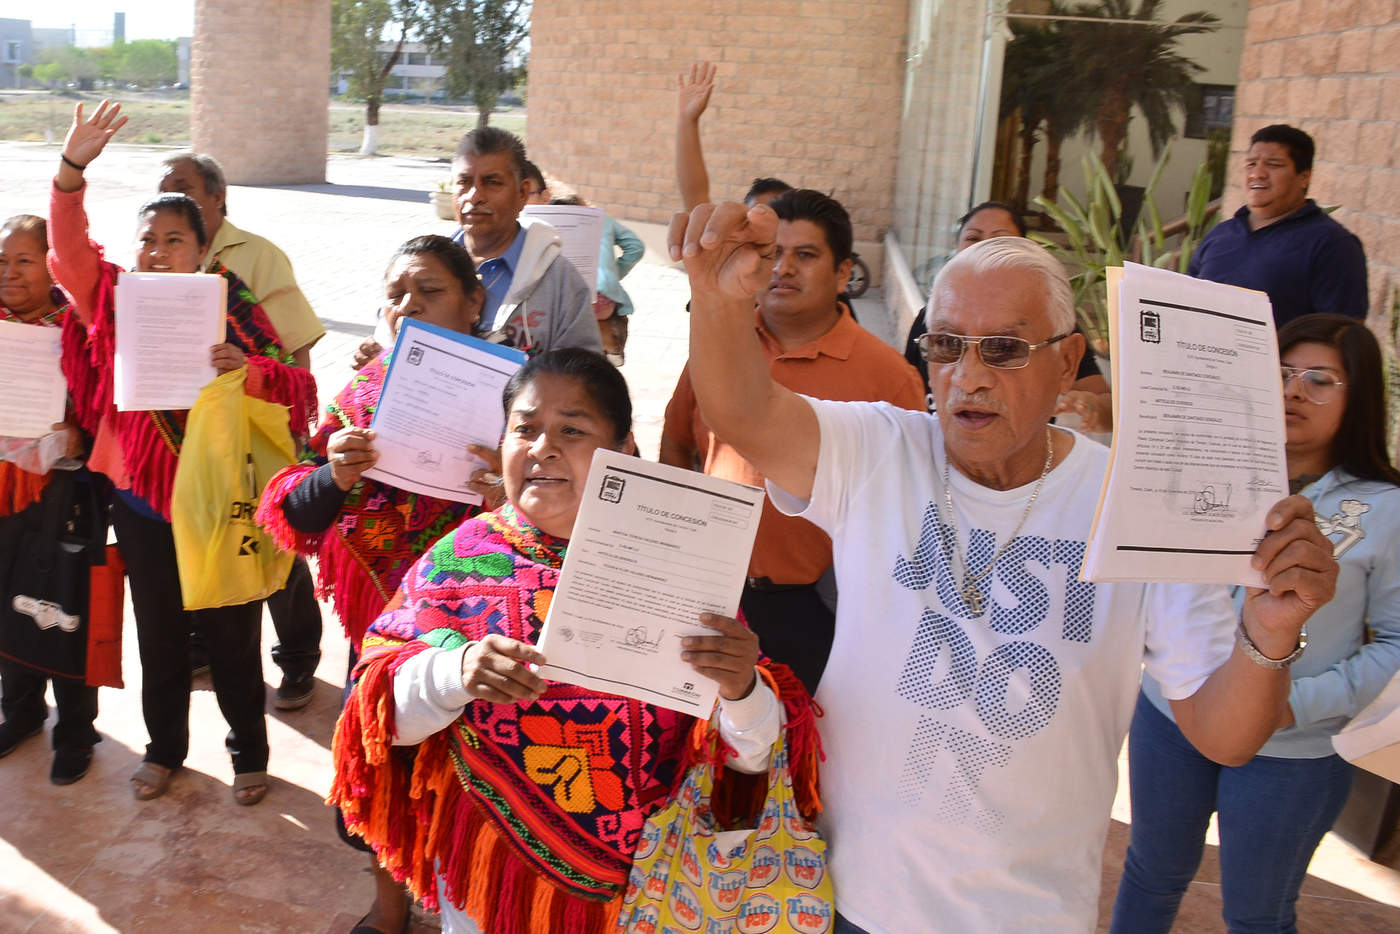 Los locatarios se manifestaron previo a la reunión del Consejo Metropolitano de La Laguna. (FERNANDO COMPEÁN) 